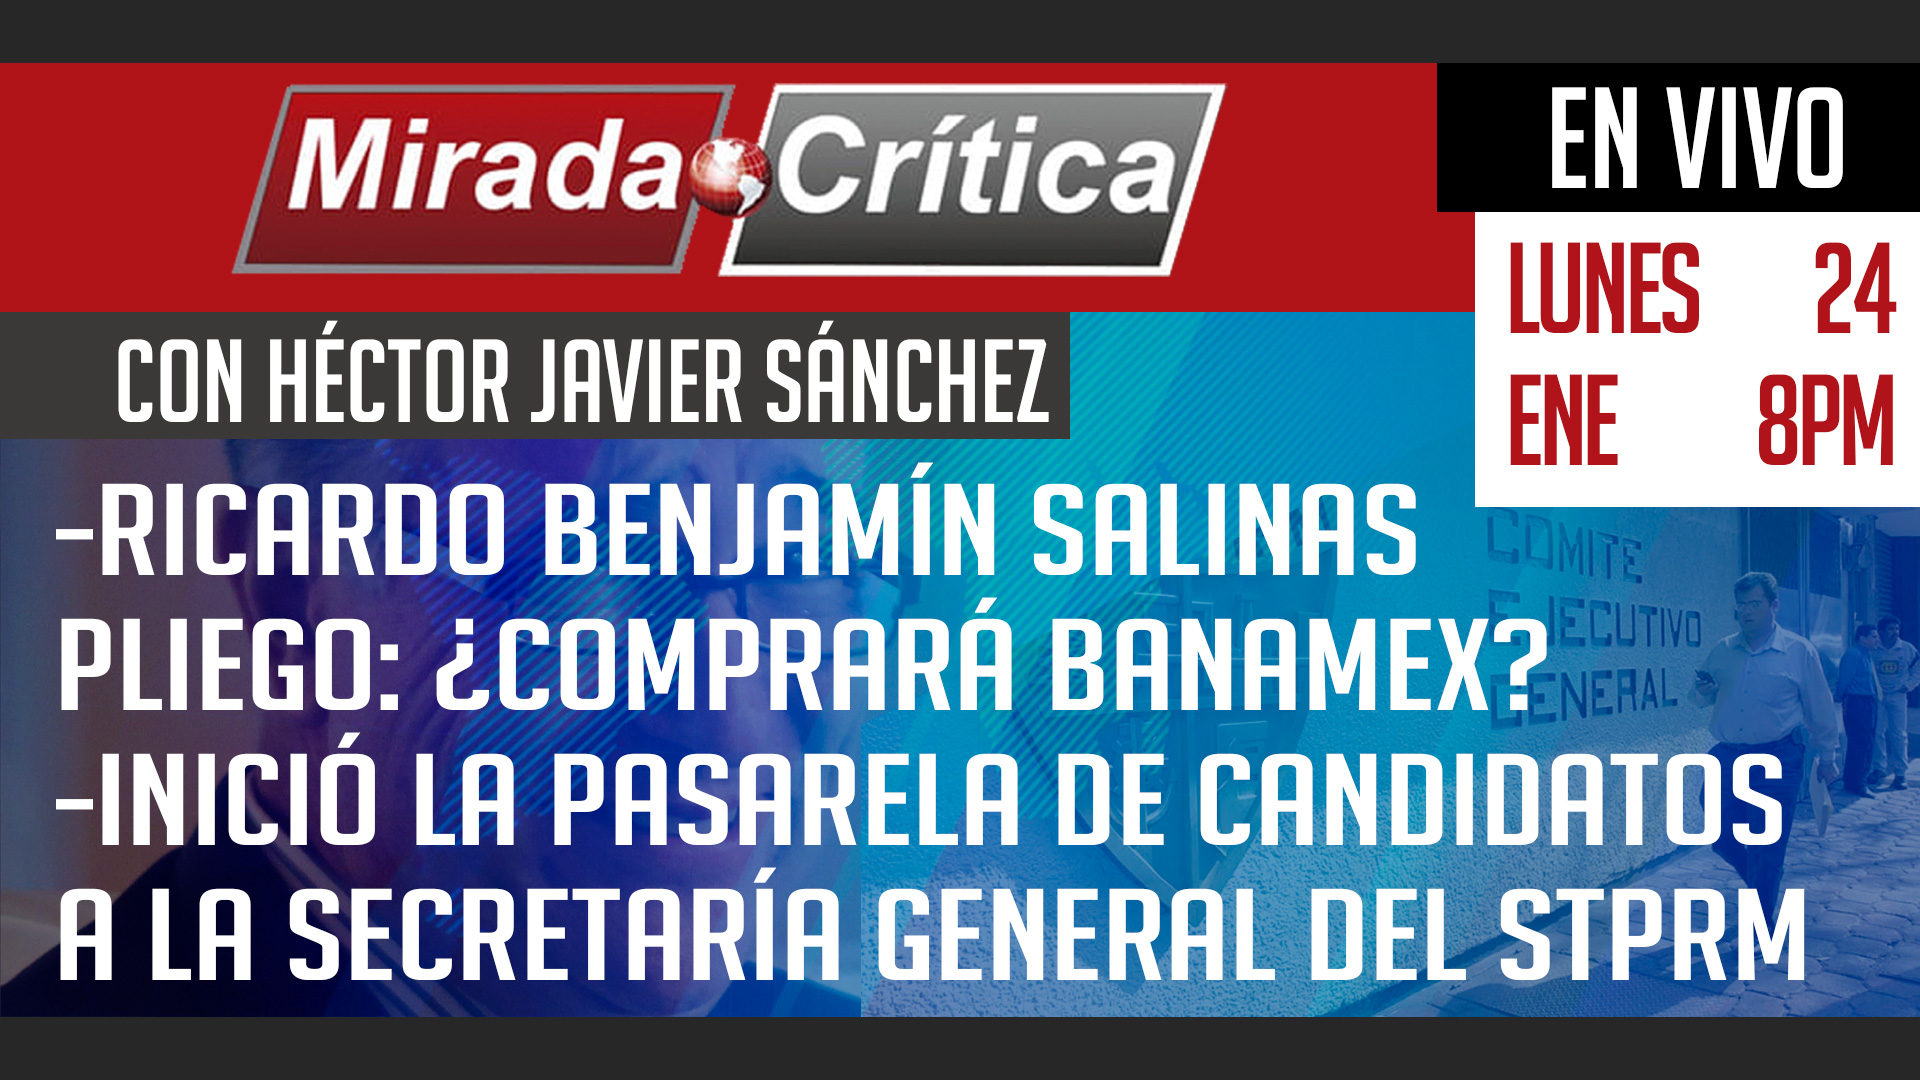 Salinas Pliego: ¿comprará Banamex? / Candidatos a la secretaría general del STPRM - Mirada Crítica